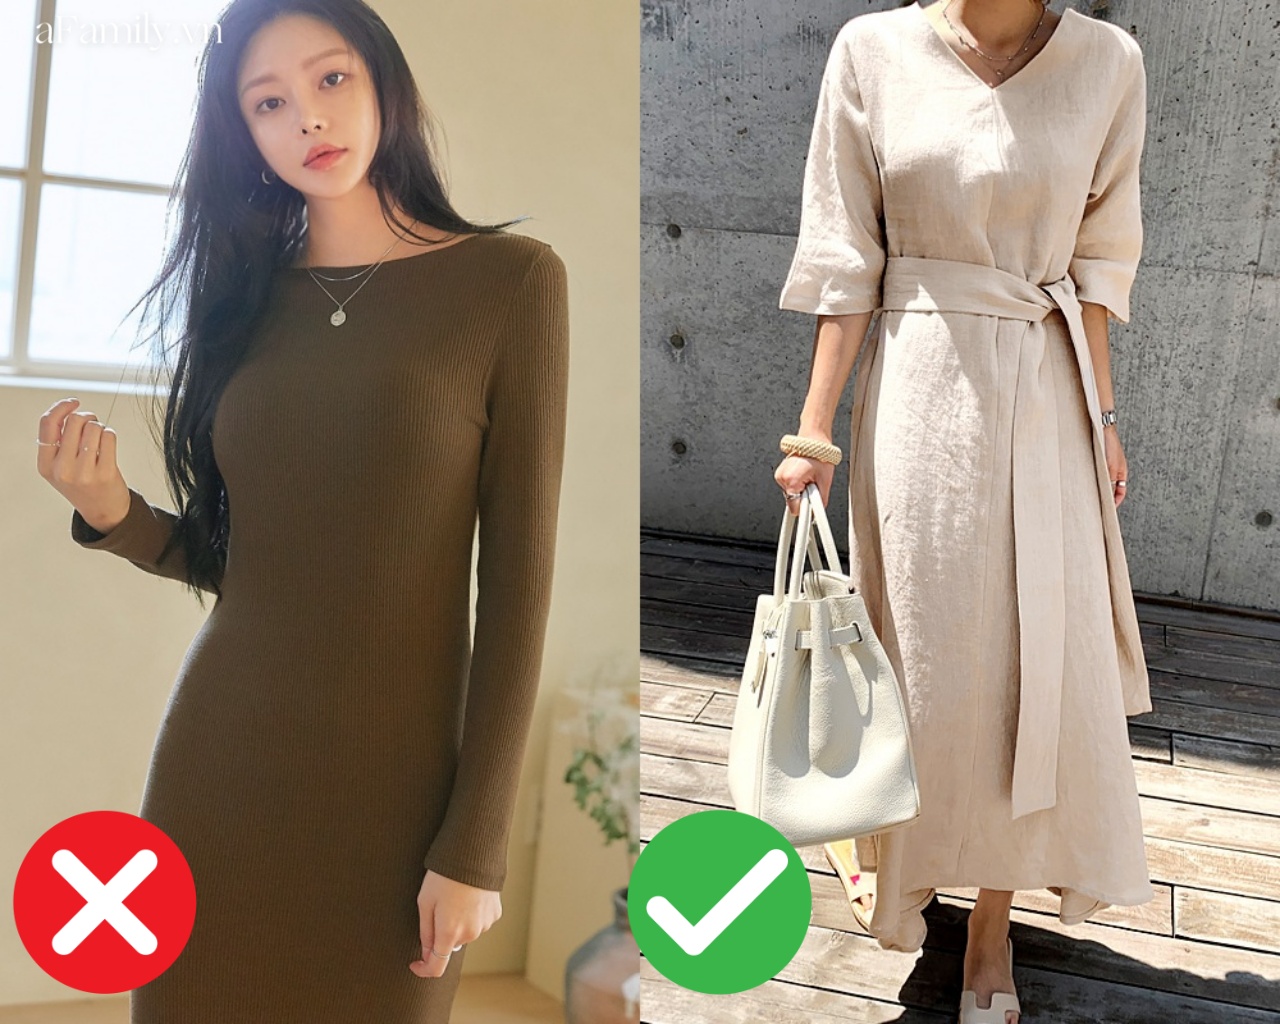 5 kiểu váy tưởng sẽ khiến các chị em trông mảnh mai hơn nhưng thực tế lại hoàn toàn ngược lại - Ảnh 4.